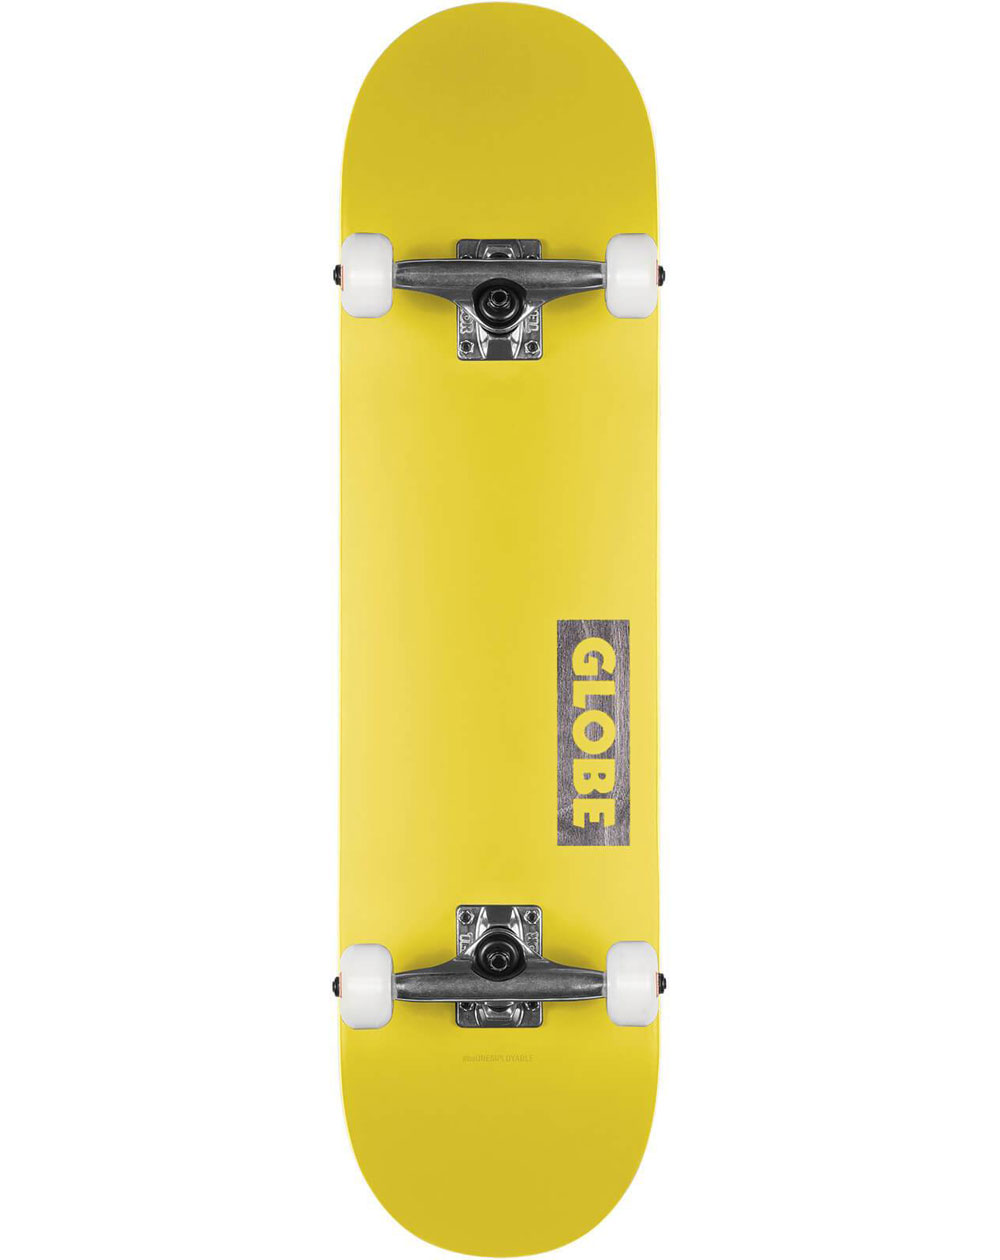 Globe Skateboard Complète Goodstock 7.75" Neon Yellow